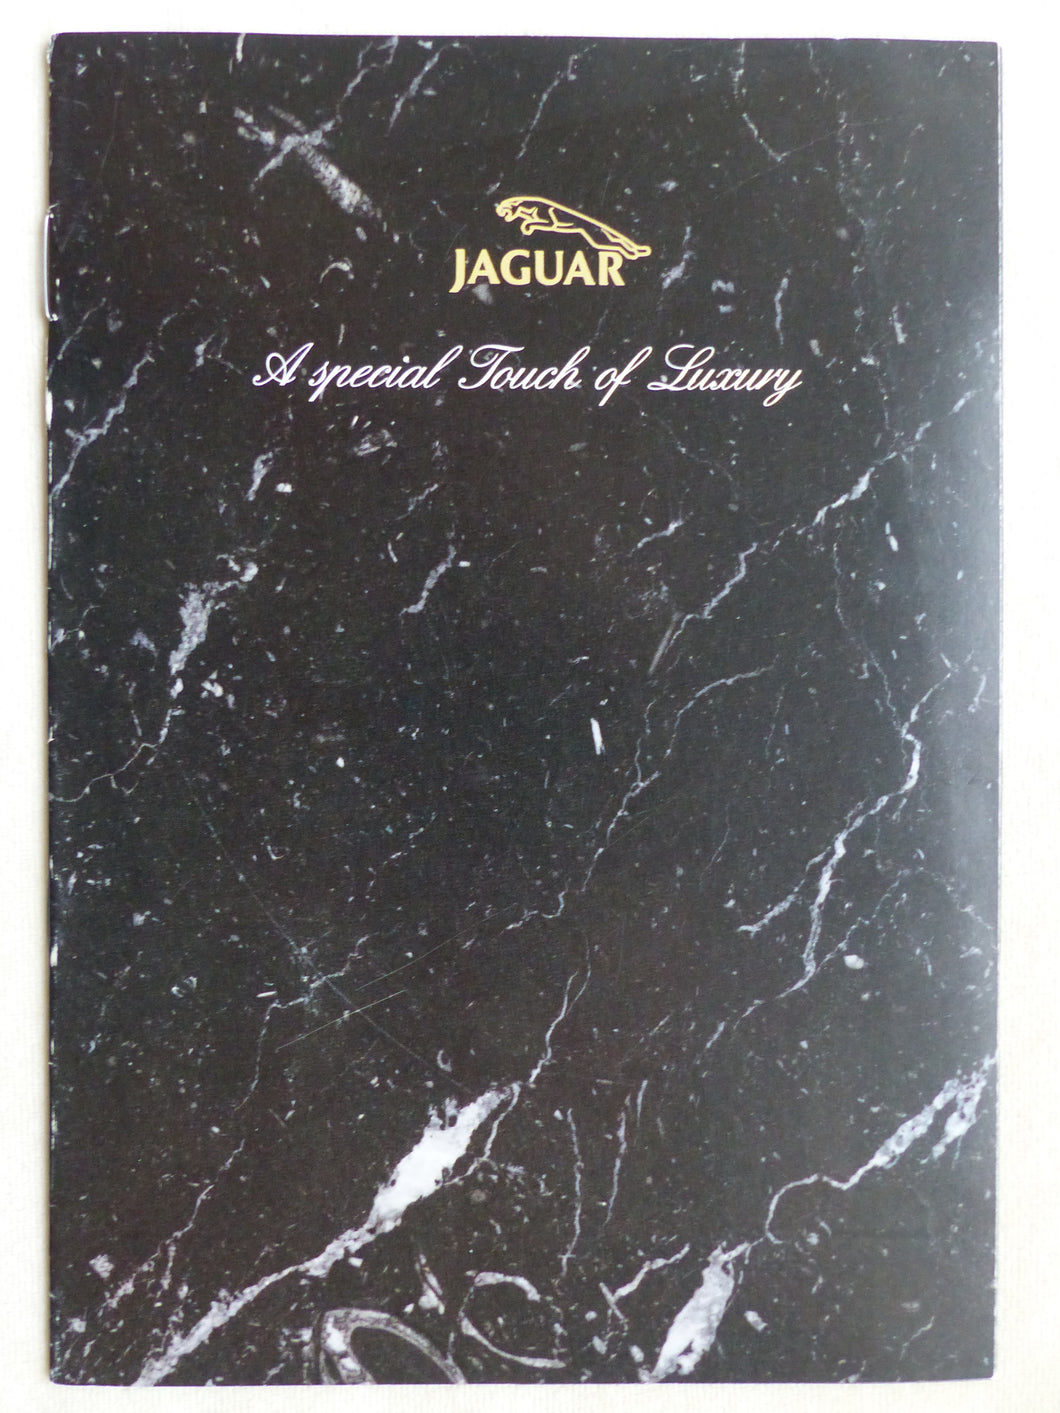 Jaguar Accessoires Schmuck Collection - Prospekt Brochure 2006